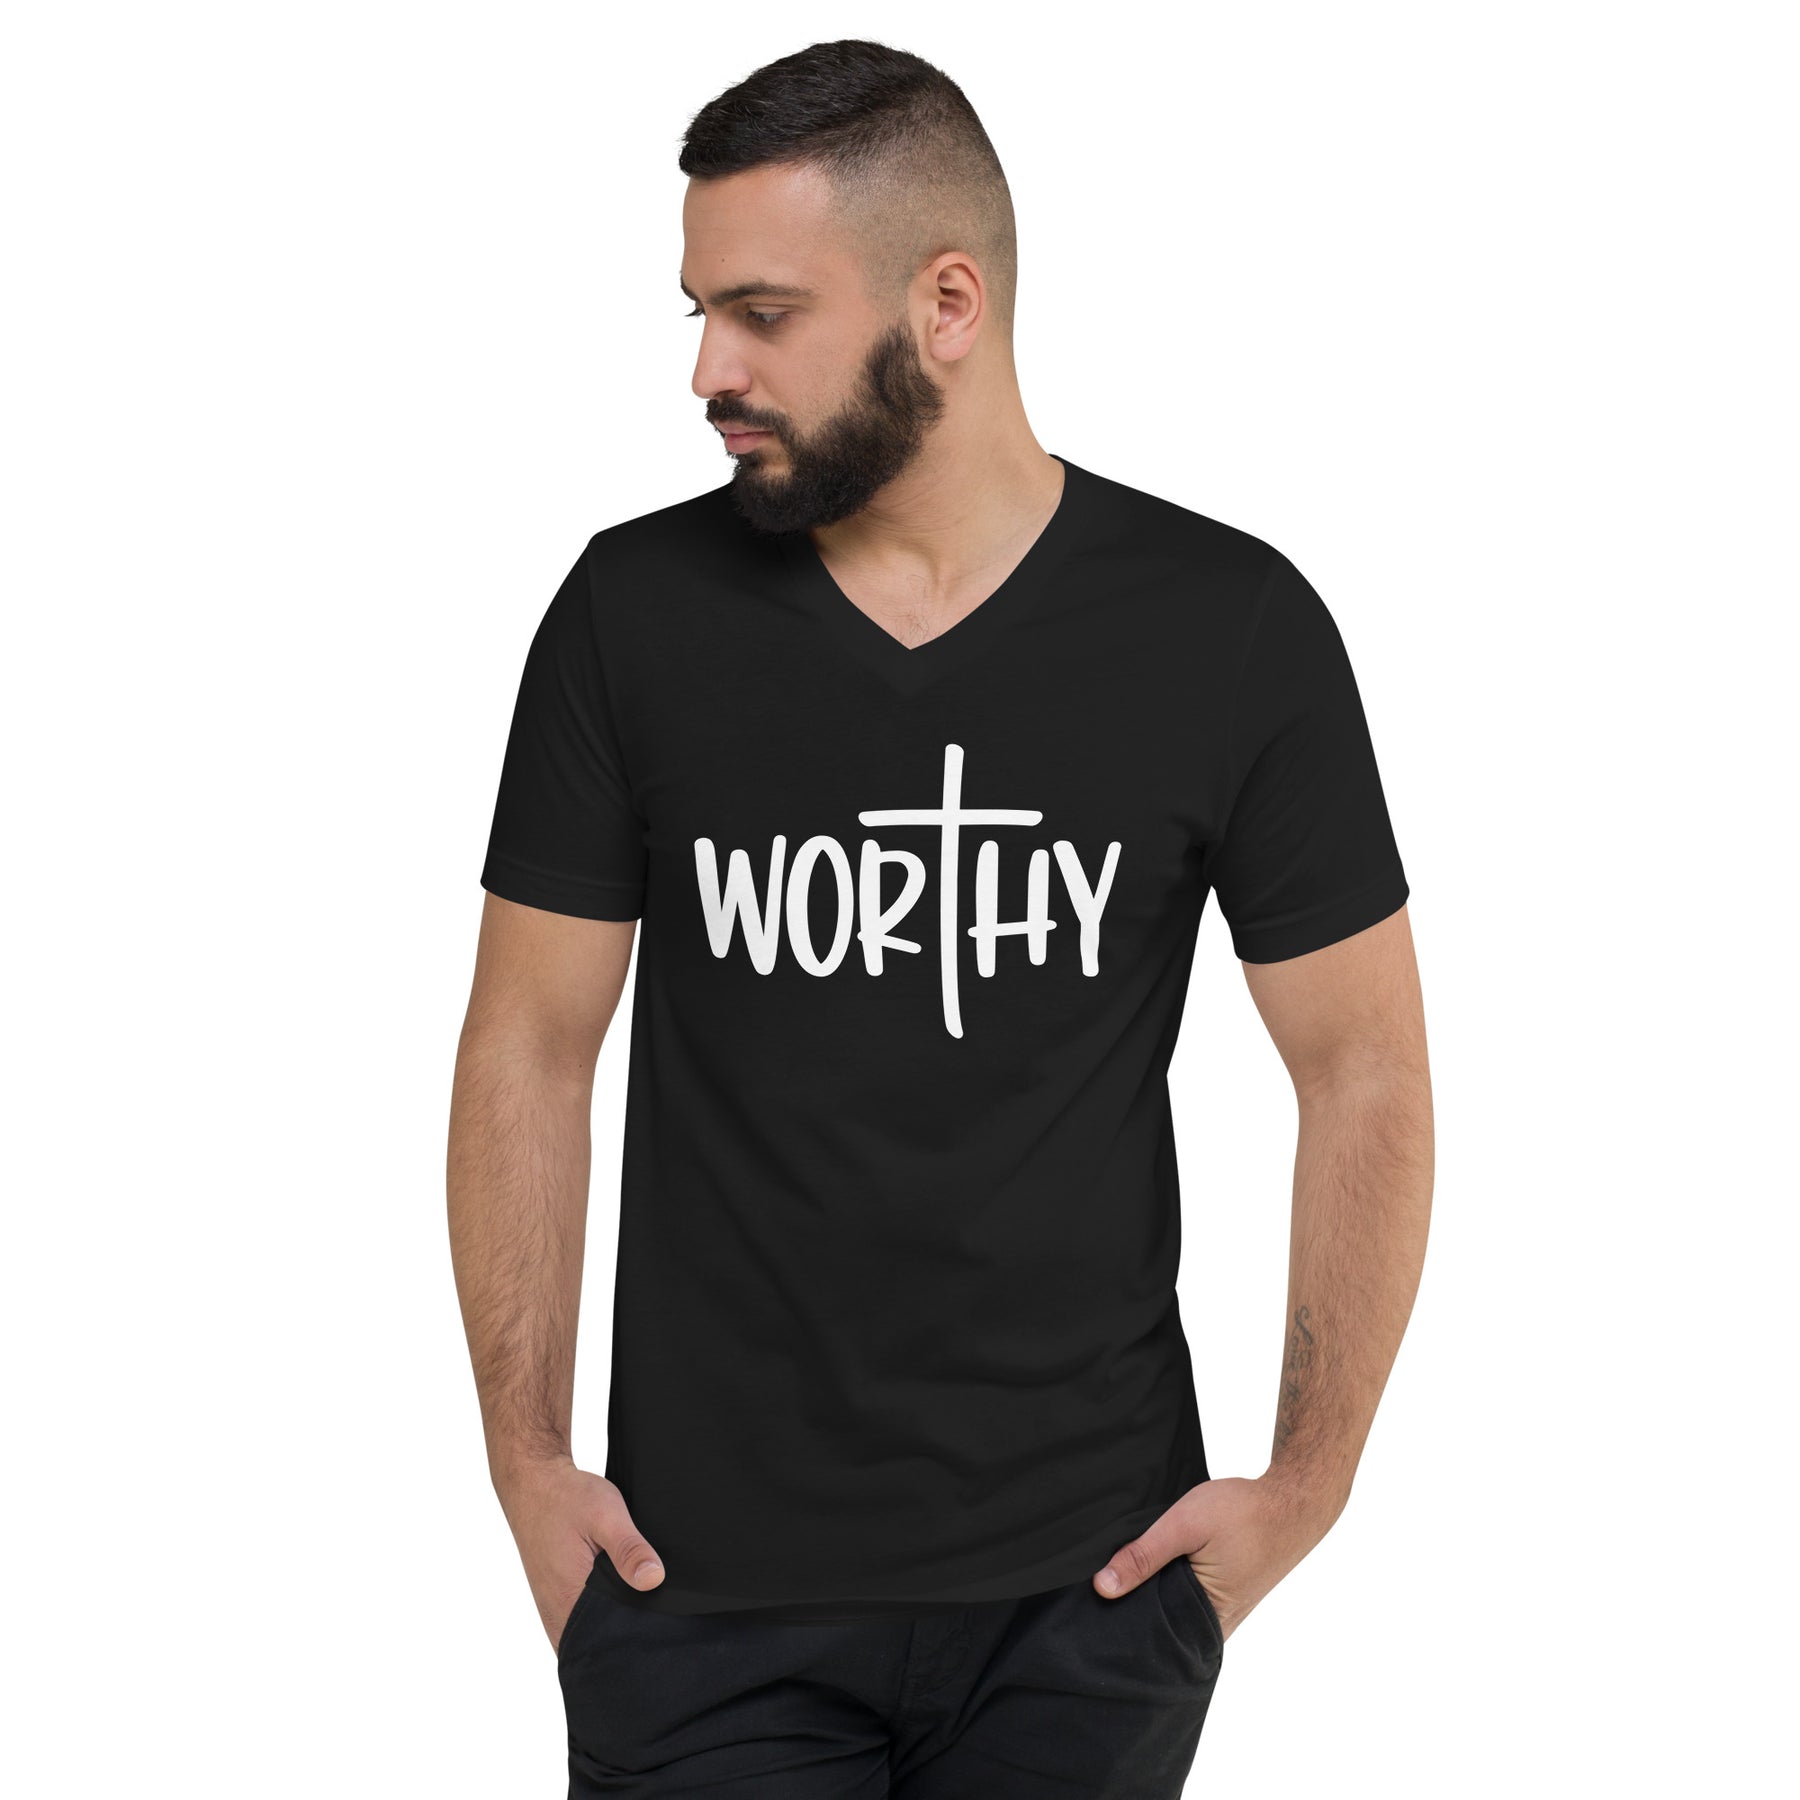 Worthy - Men's V-Neck T-Shirt